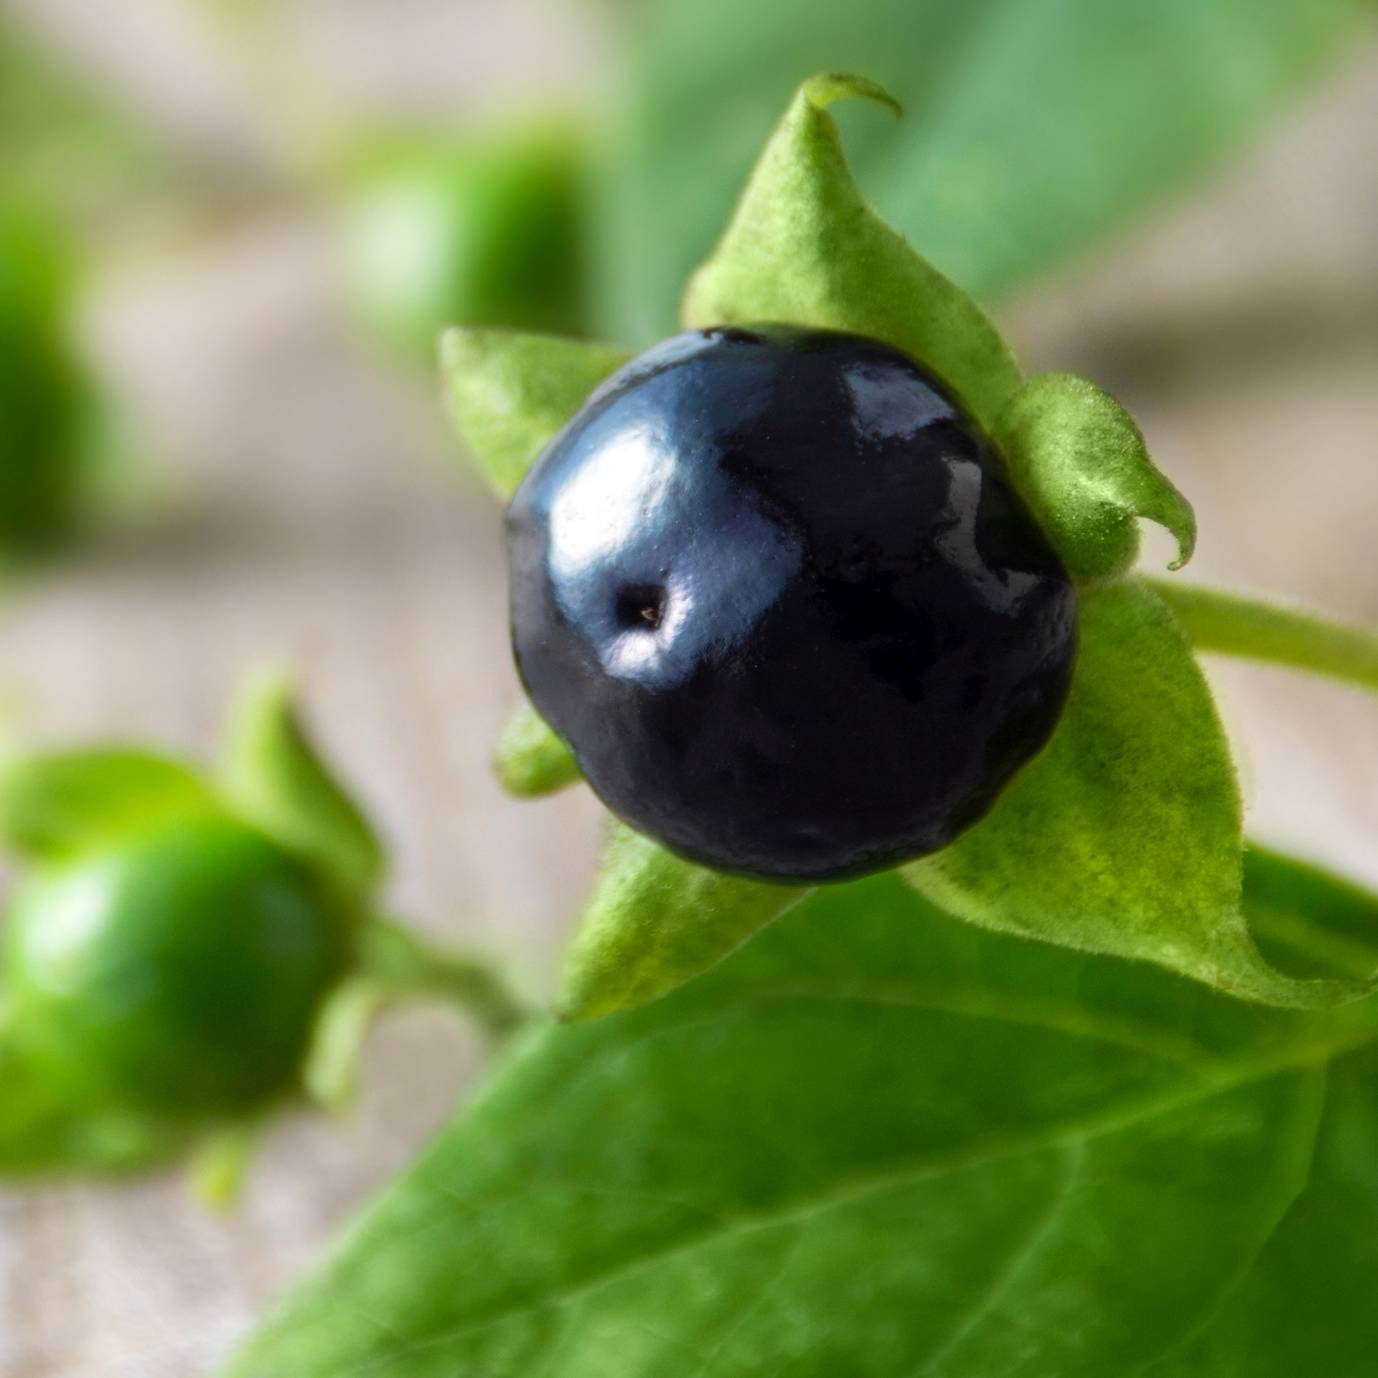 Lek homeopatyczny Belladonna - homeopatia. Zbliżenie na owoc rośliny pokrzyk wilcza jagoda.